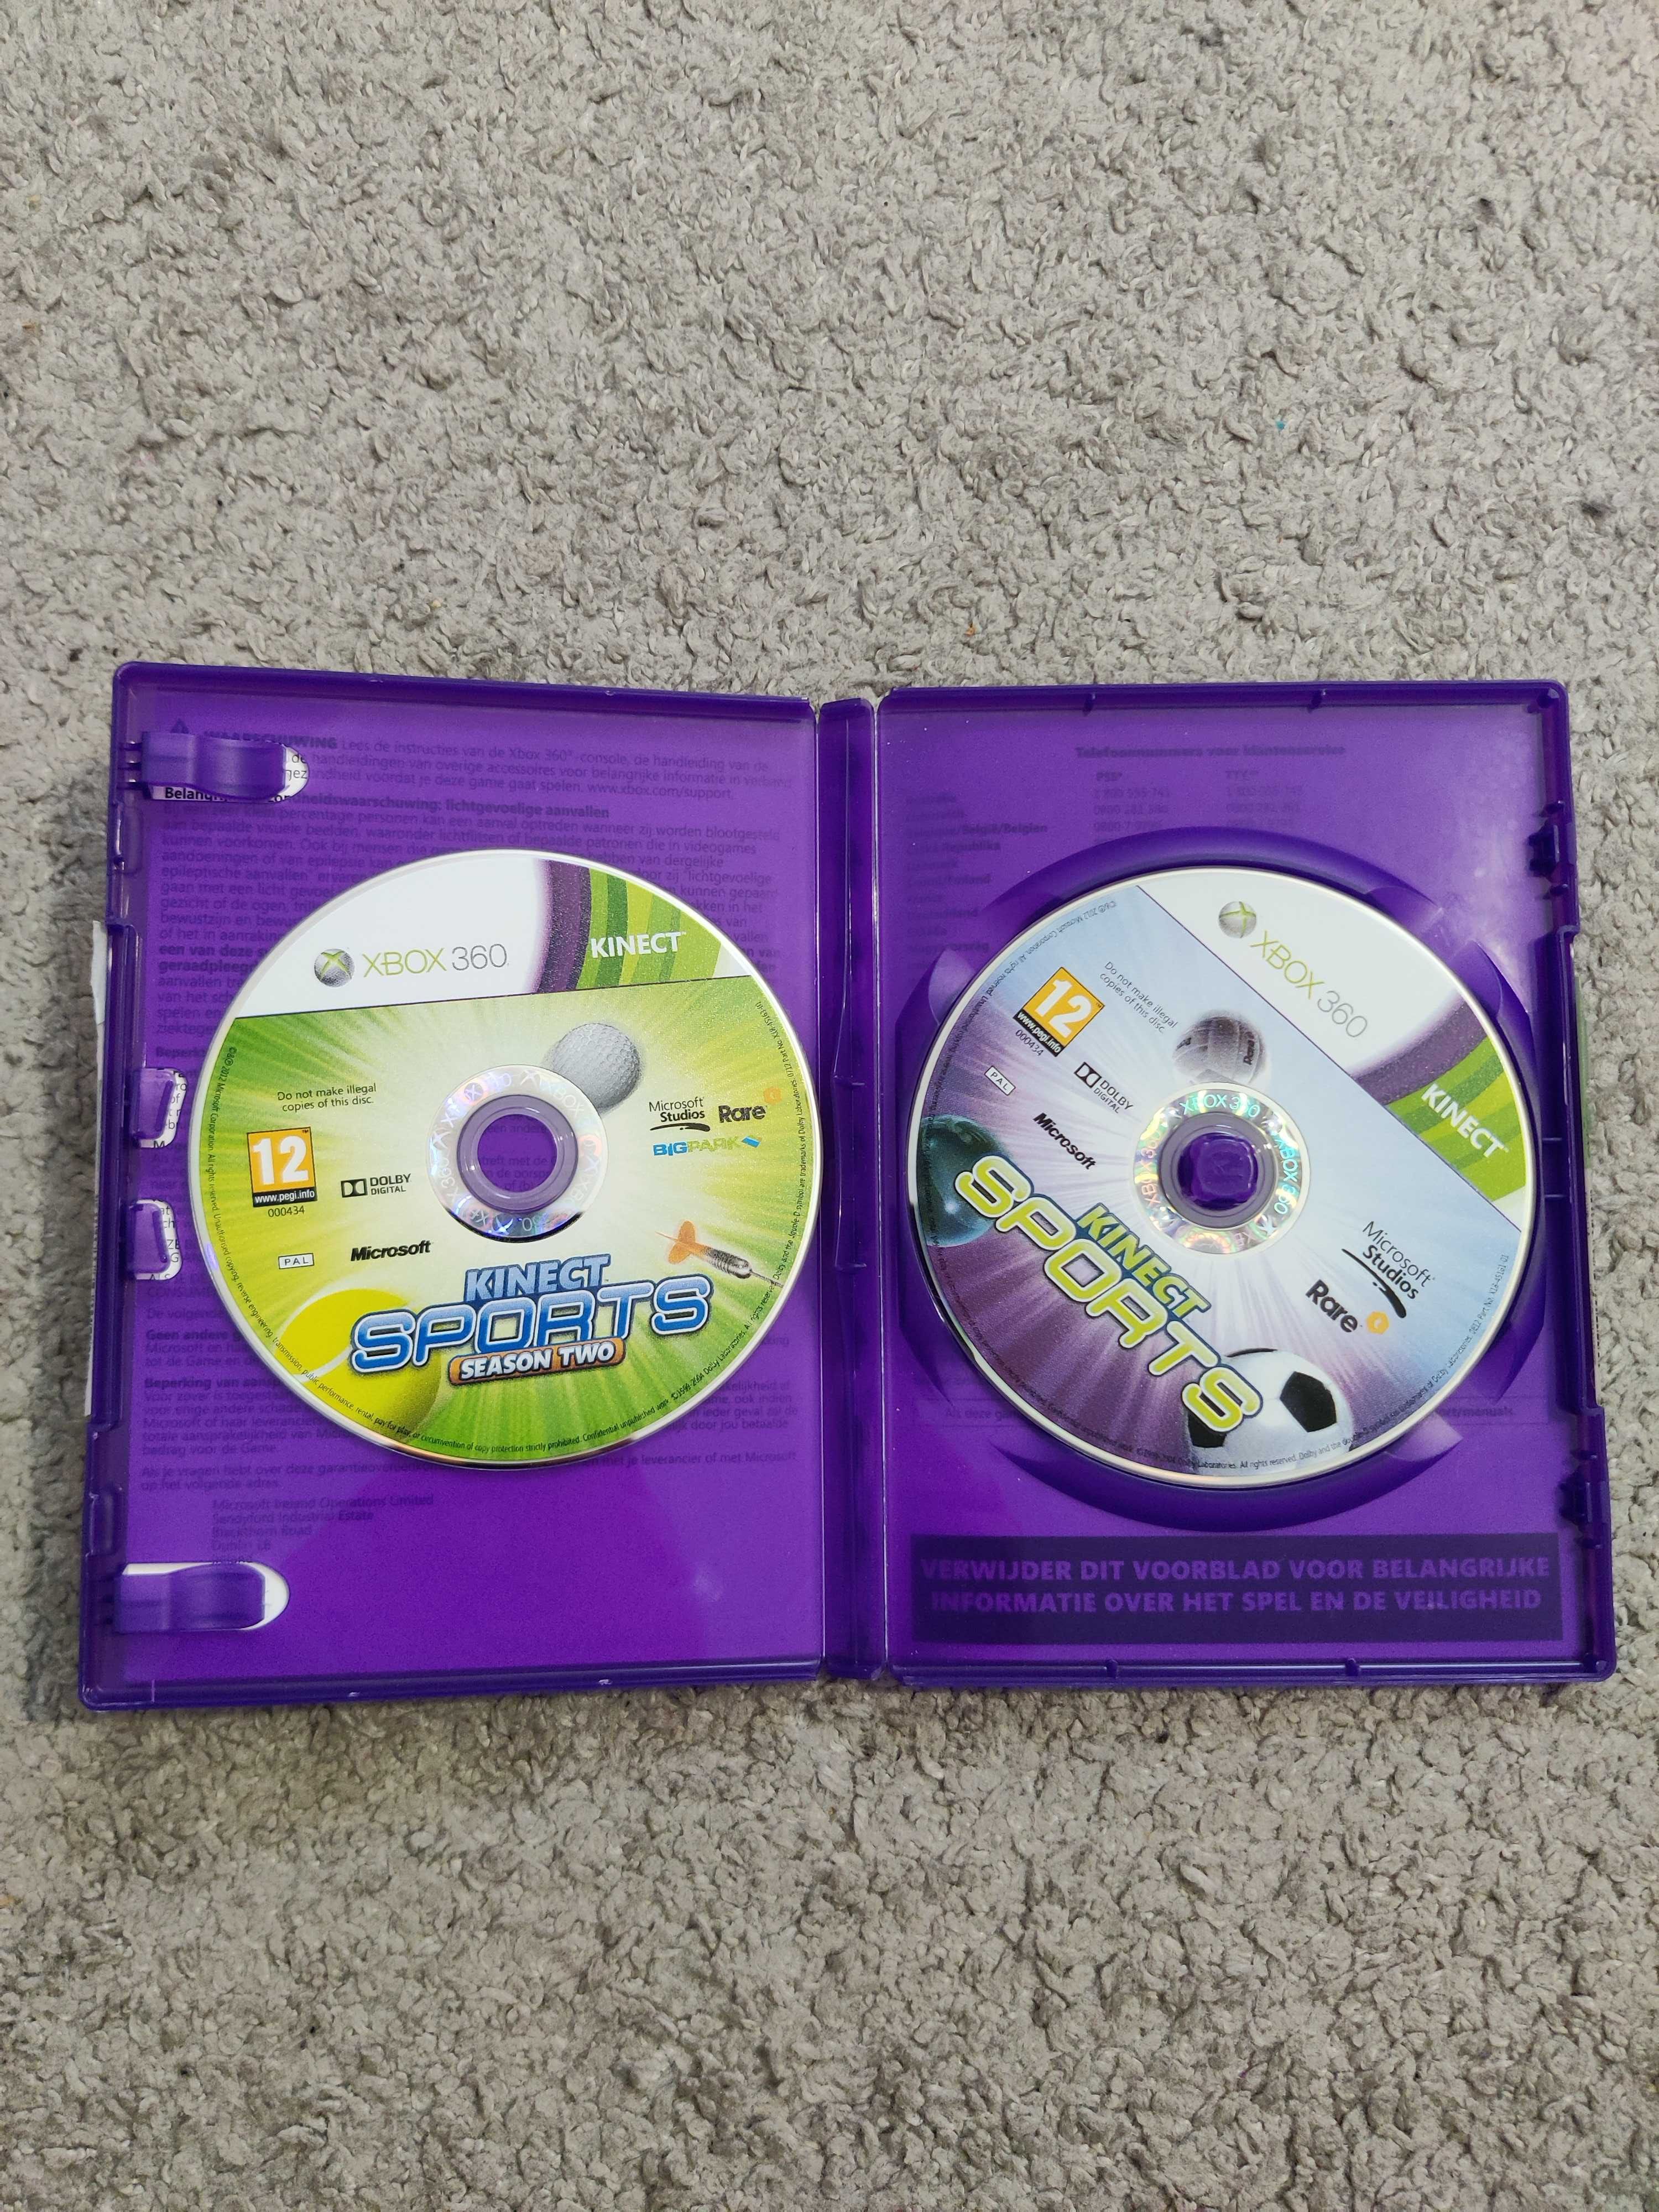 Gra Xbox 360 / Kinect sport i kinect sports 2 ( język polski) - 2 gry